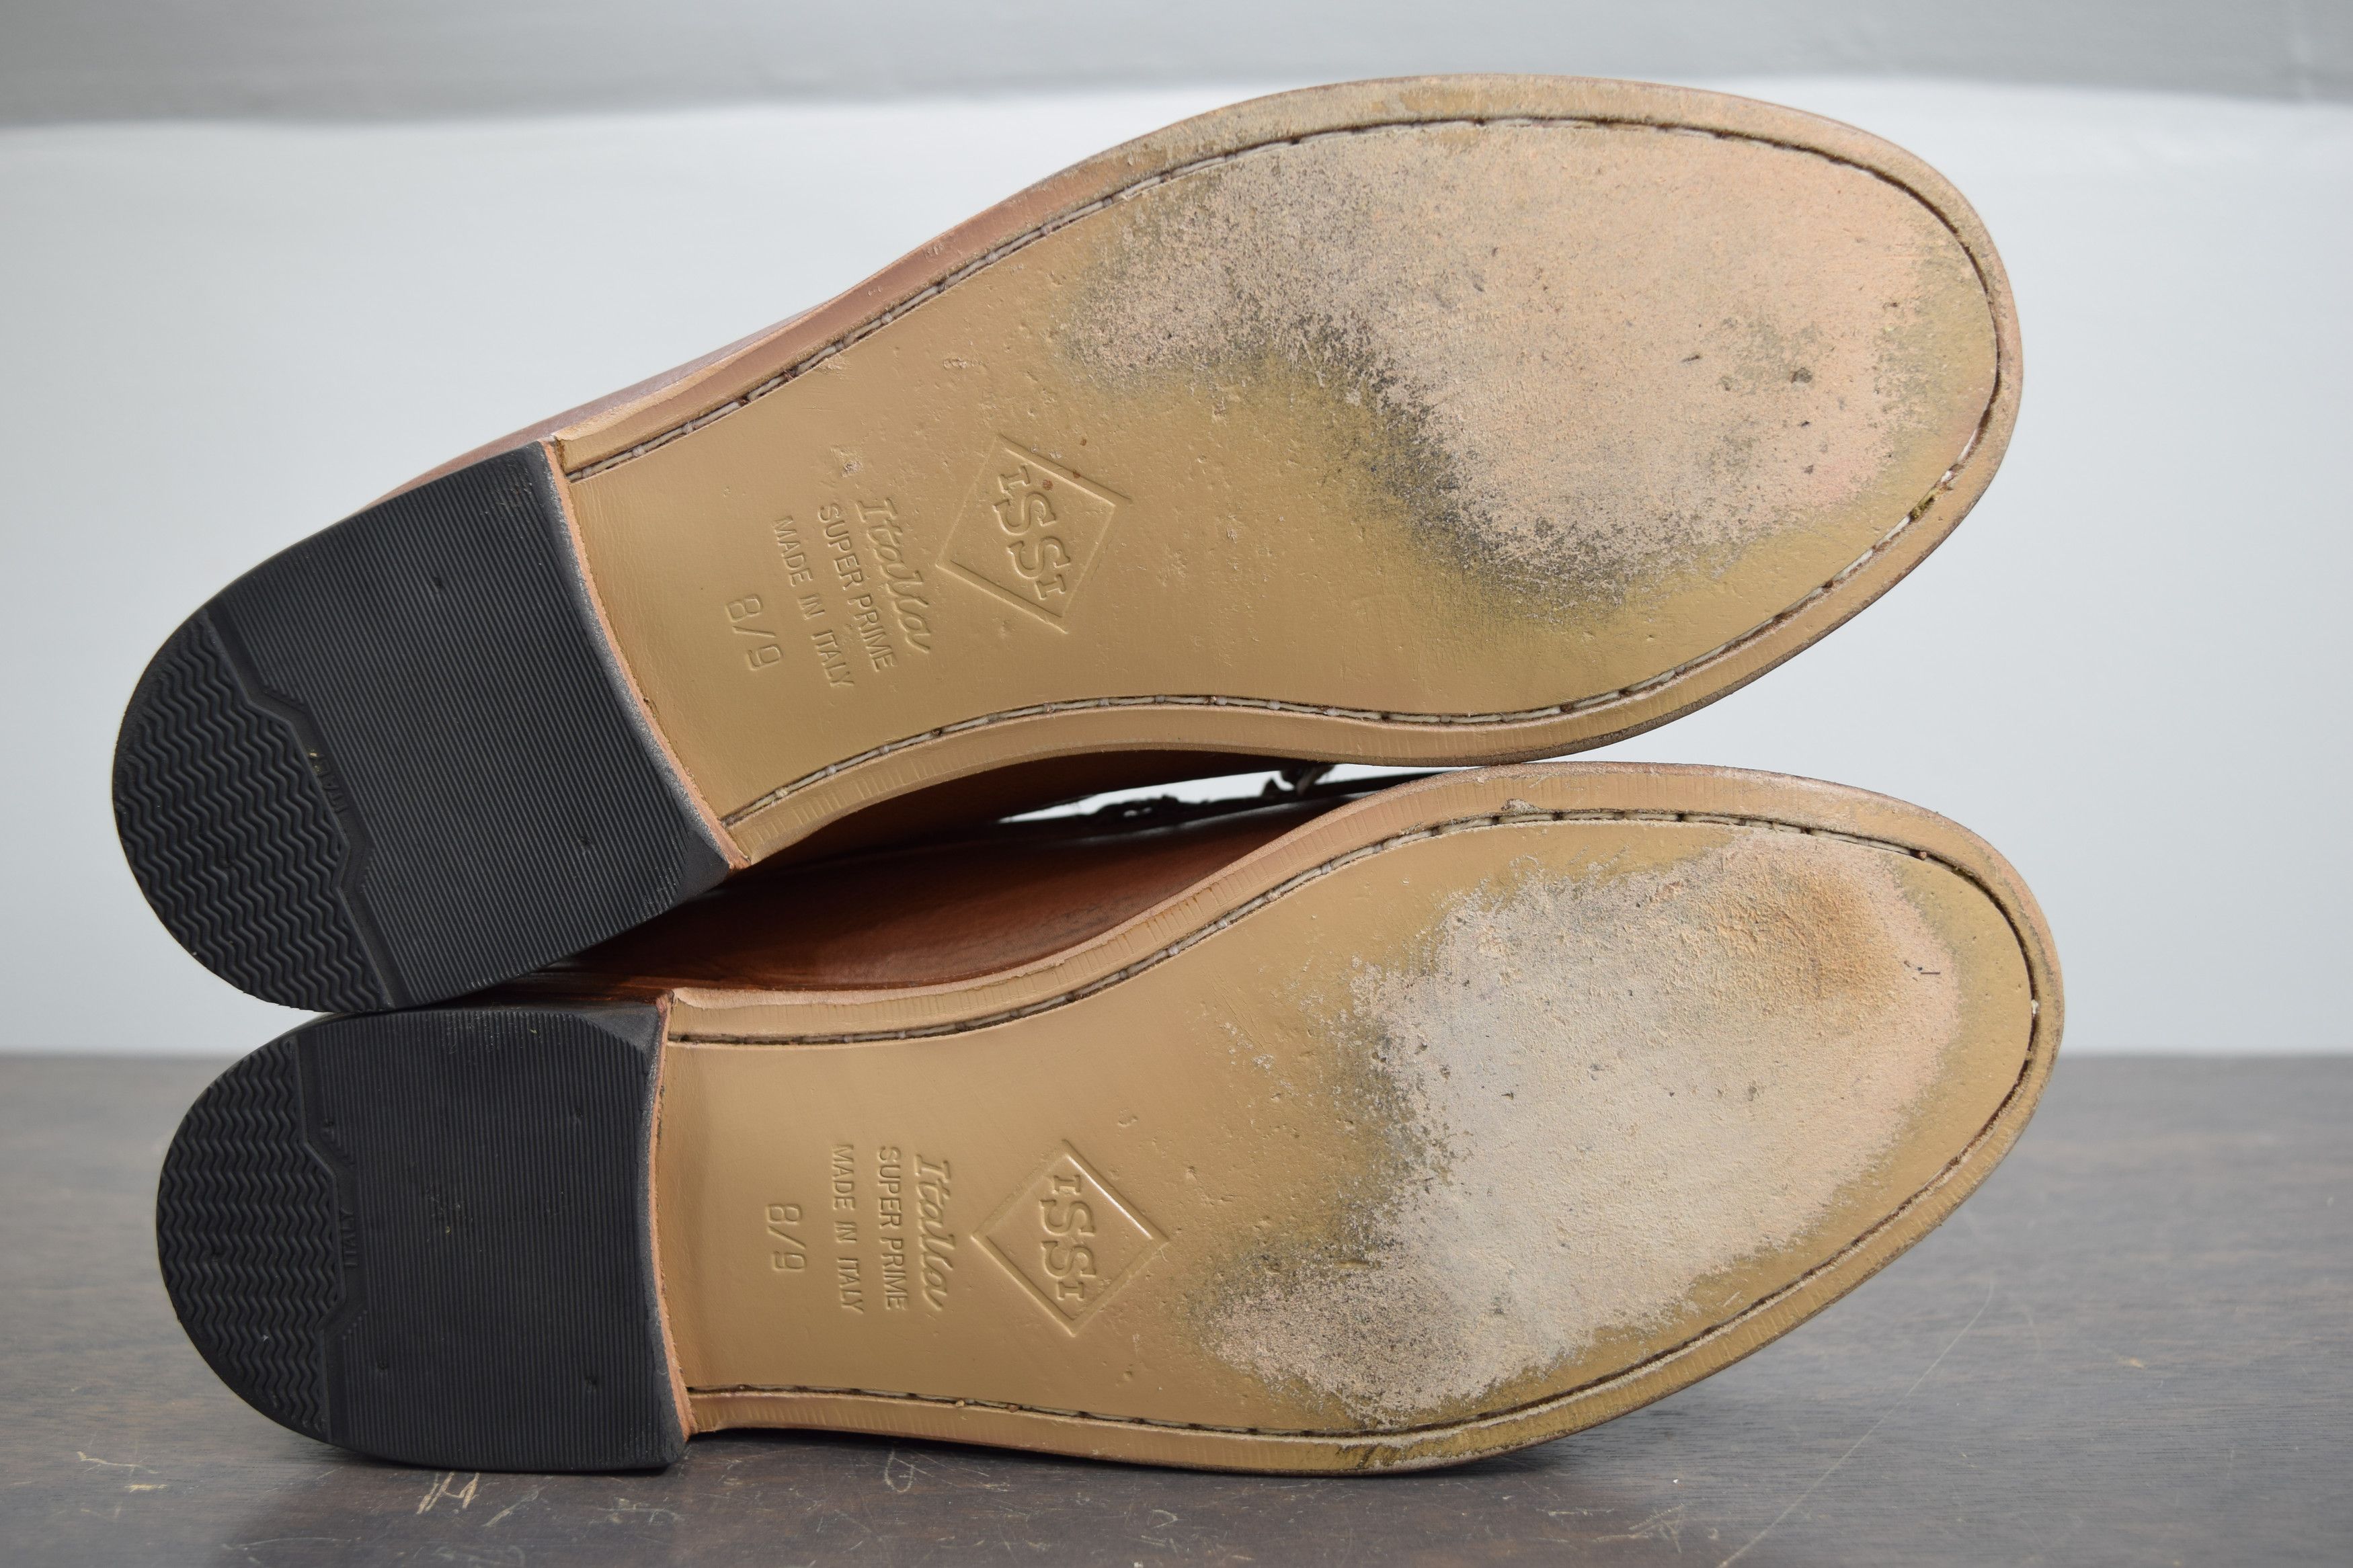 Allen Edmonds Nottingham Handsewn Brown Leather Kiltie Loafer 9.5 C Narrow Size US 9.5 / EU 42-43 - 9 Thumbnail